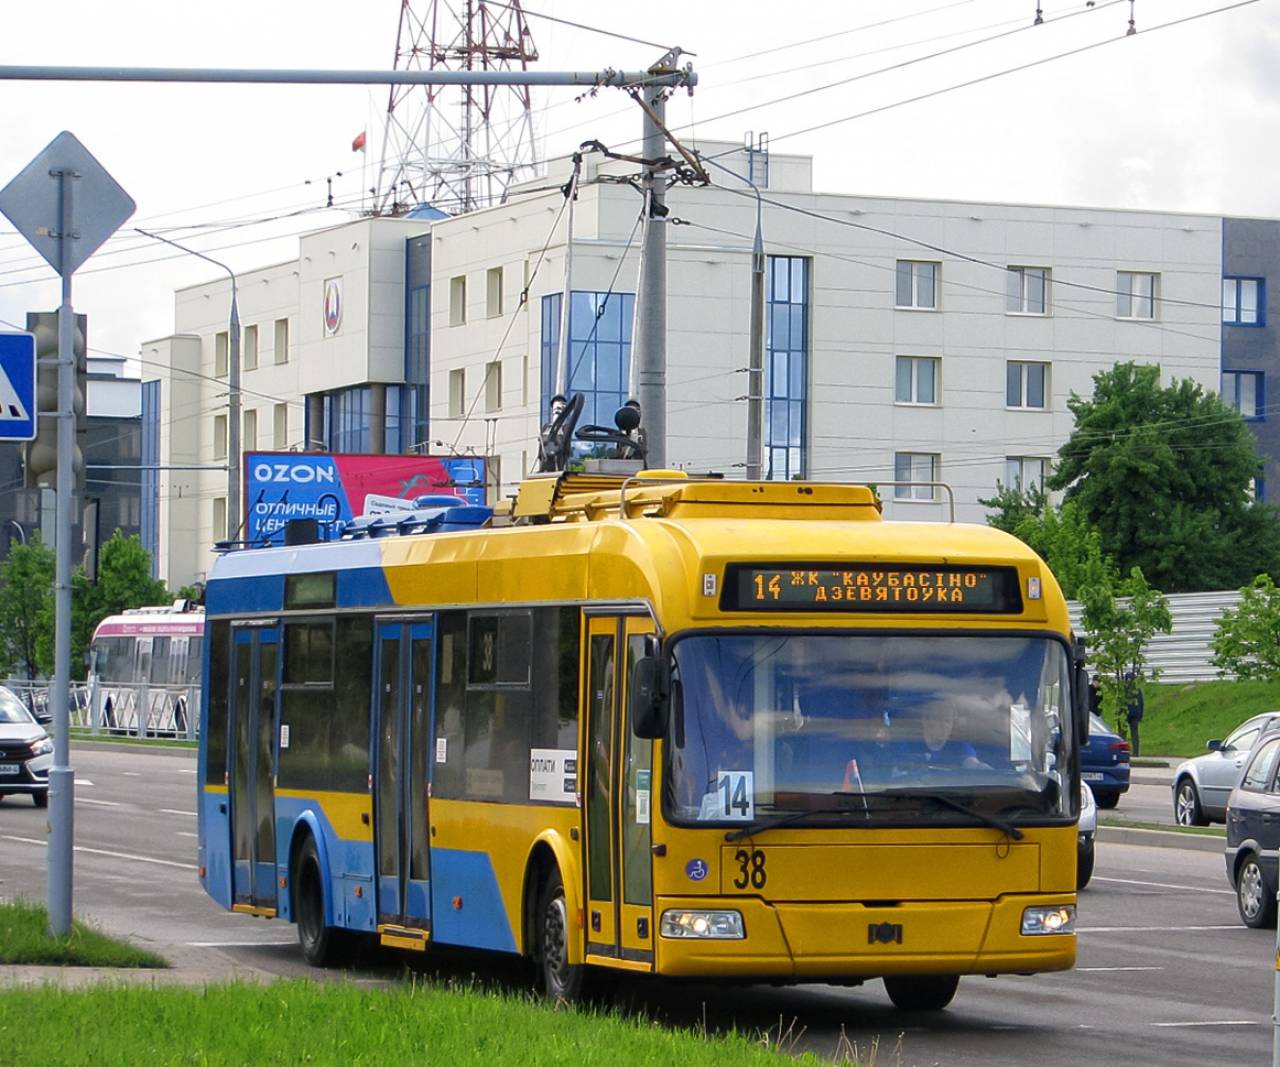 14-й троллейбус вернется на улицы Гродно, но по другому маршруту. Изучаем эти и другие изменения